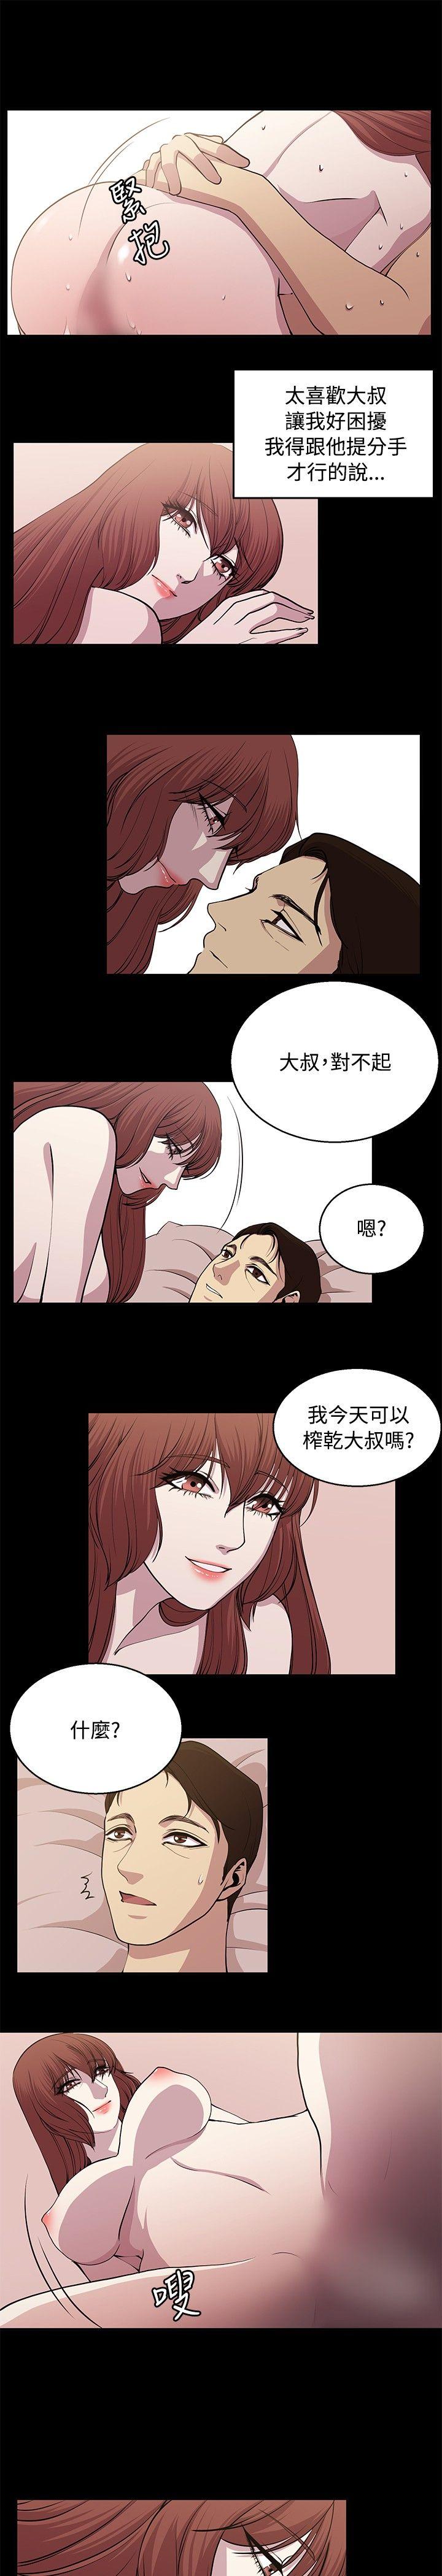 韩国污漫画 贊助者 第24话 9